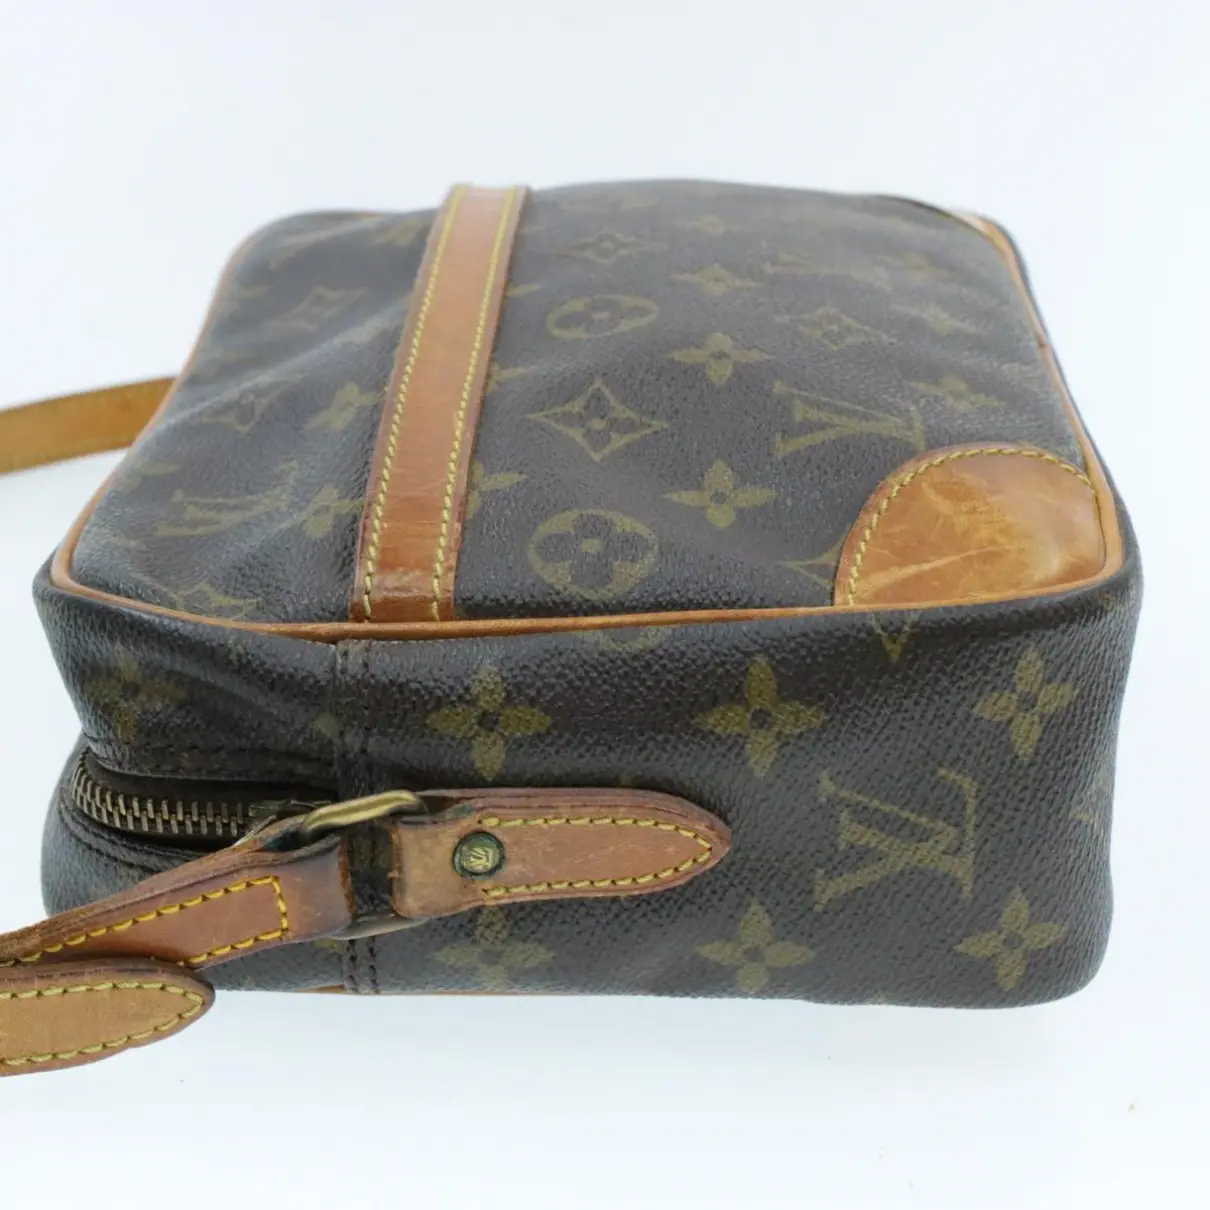 Trocadéro cloth handbag Louis Vuitton - Vintage